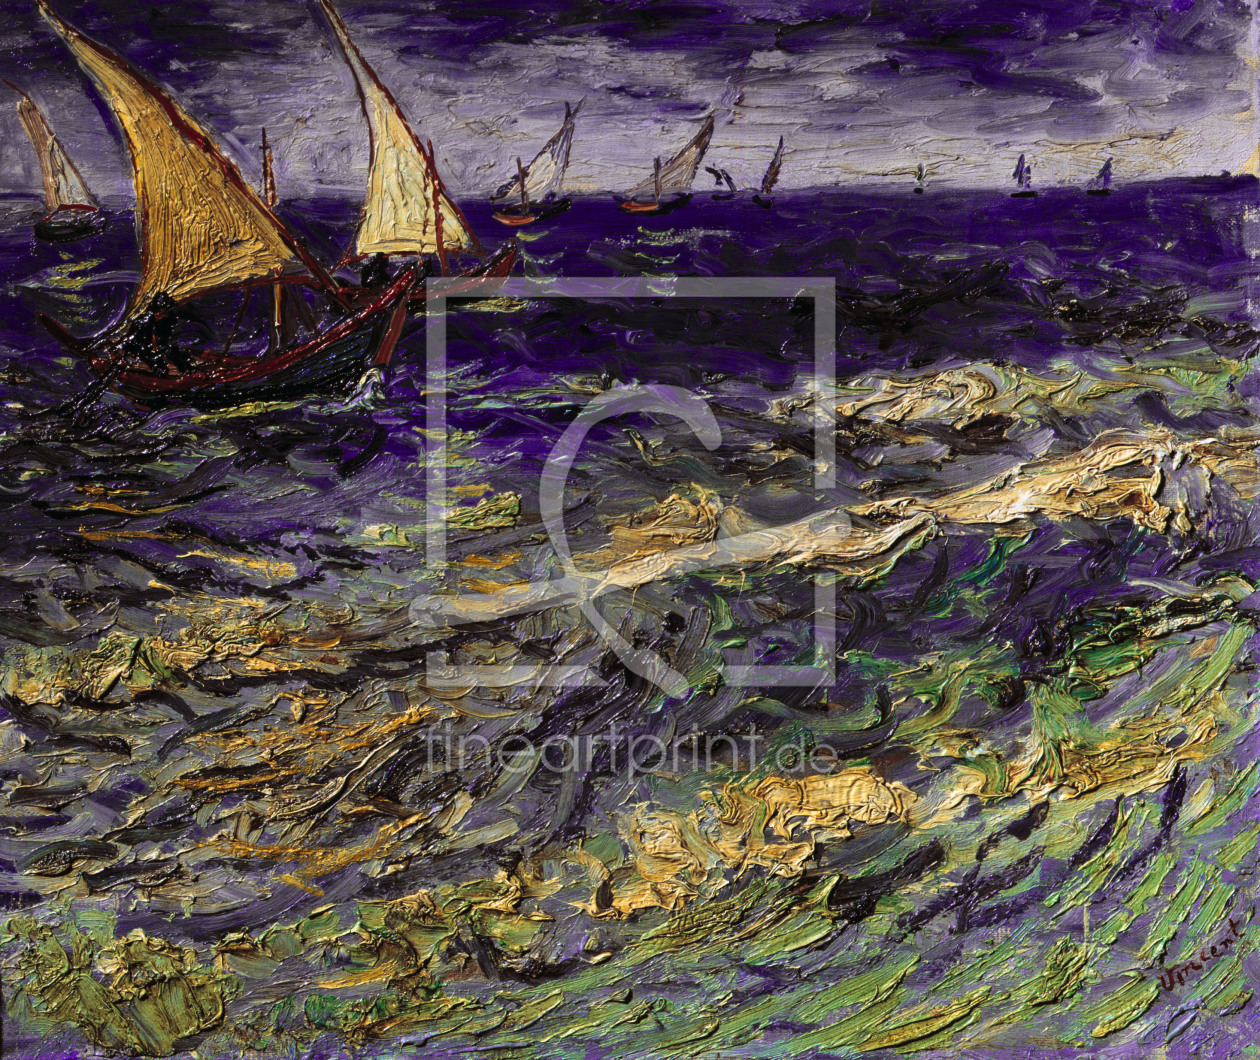 Bild-Nr.: 30003458 van Gogh / Seascape / 1888 erstellt von van Gogh, Vincent